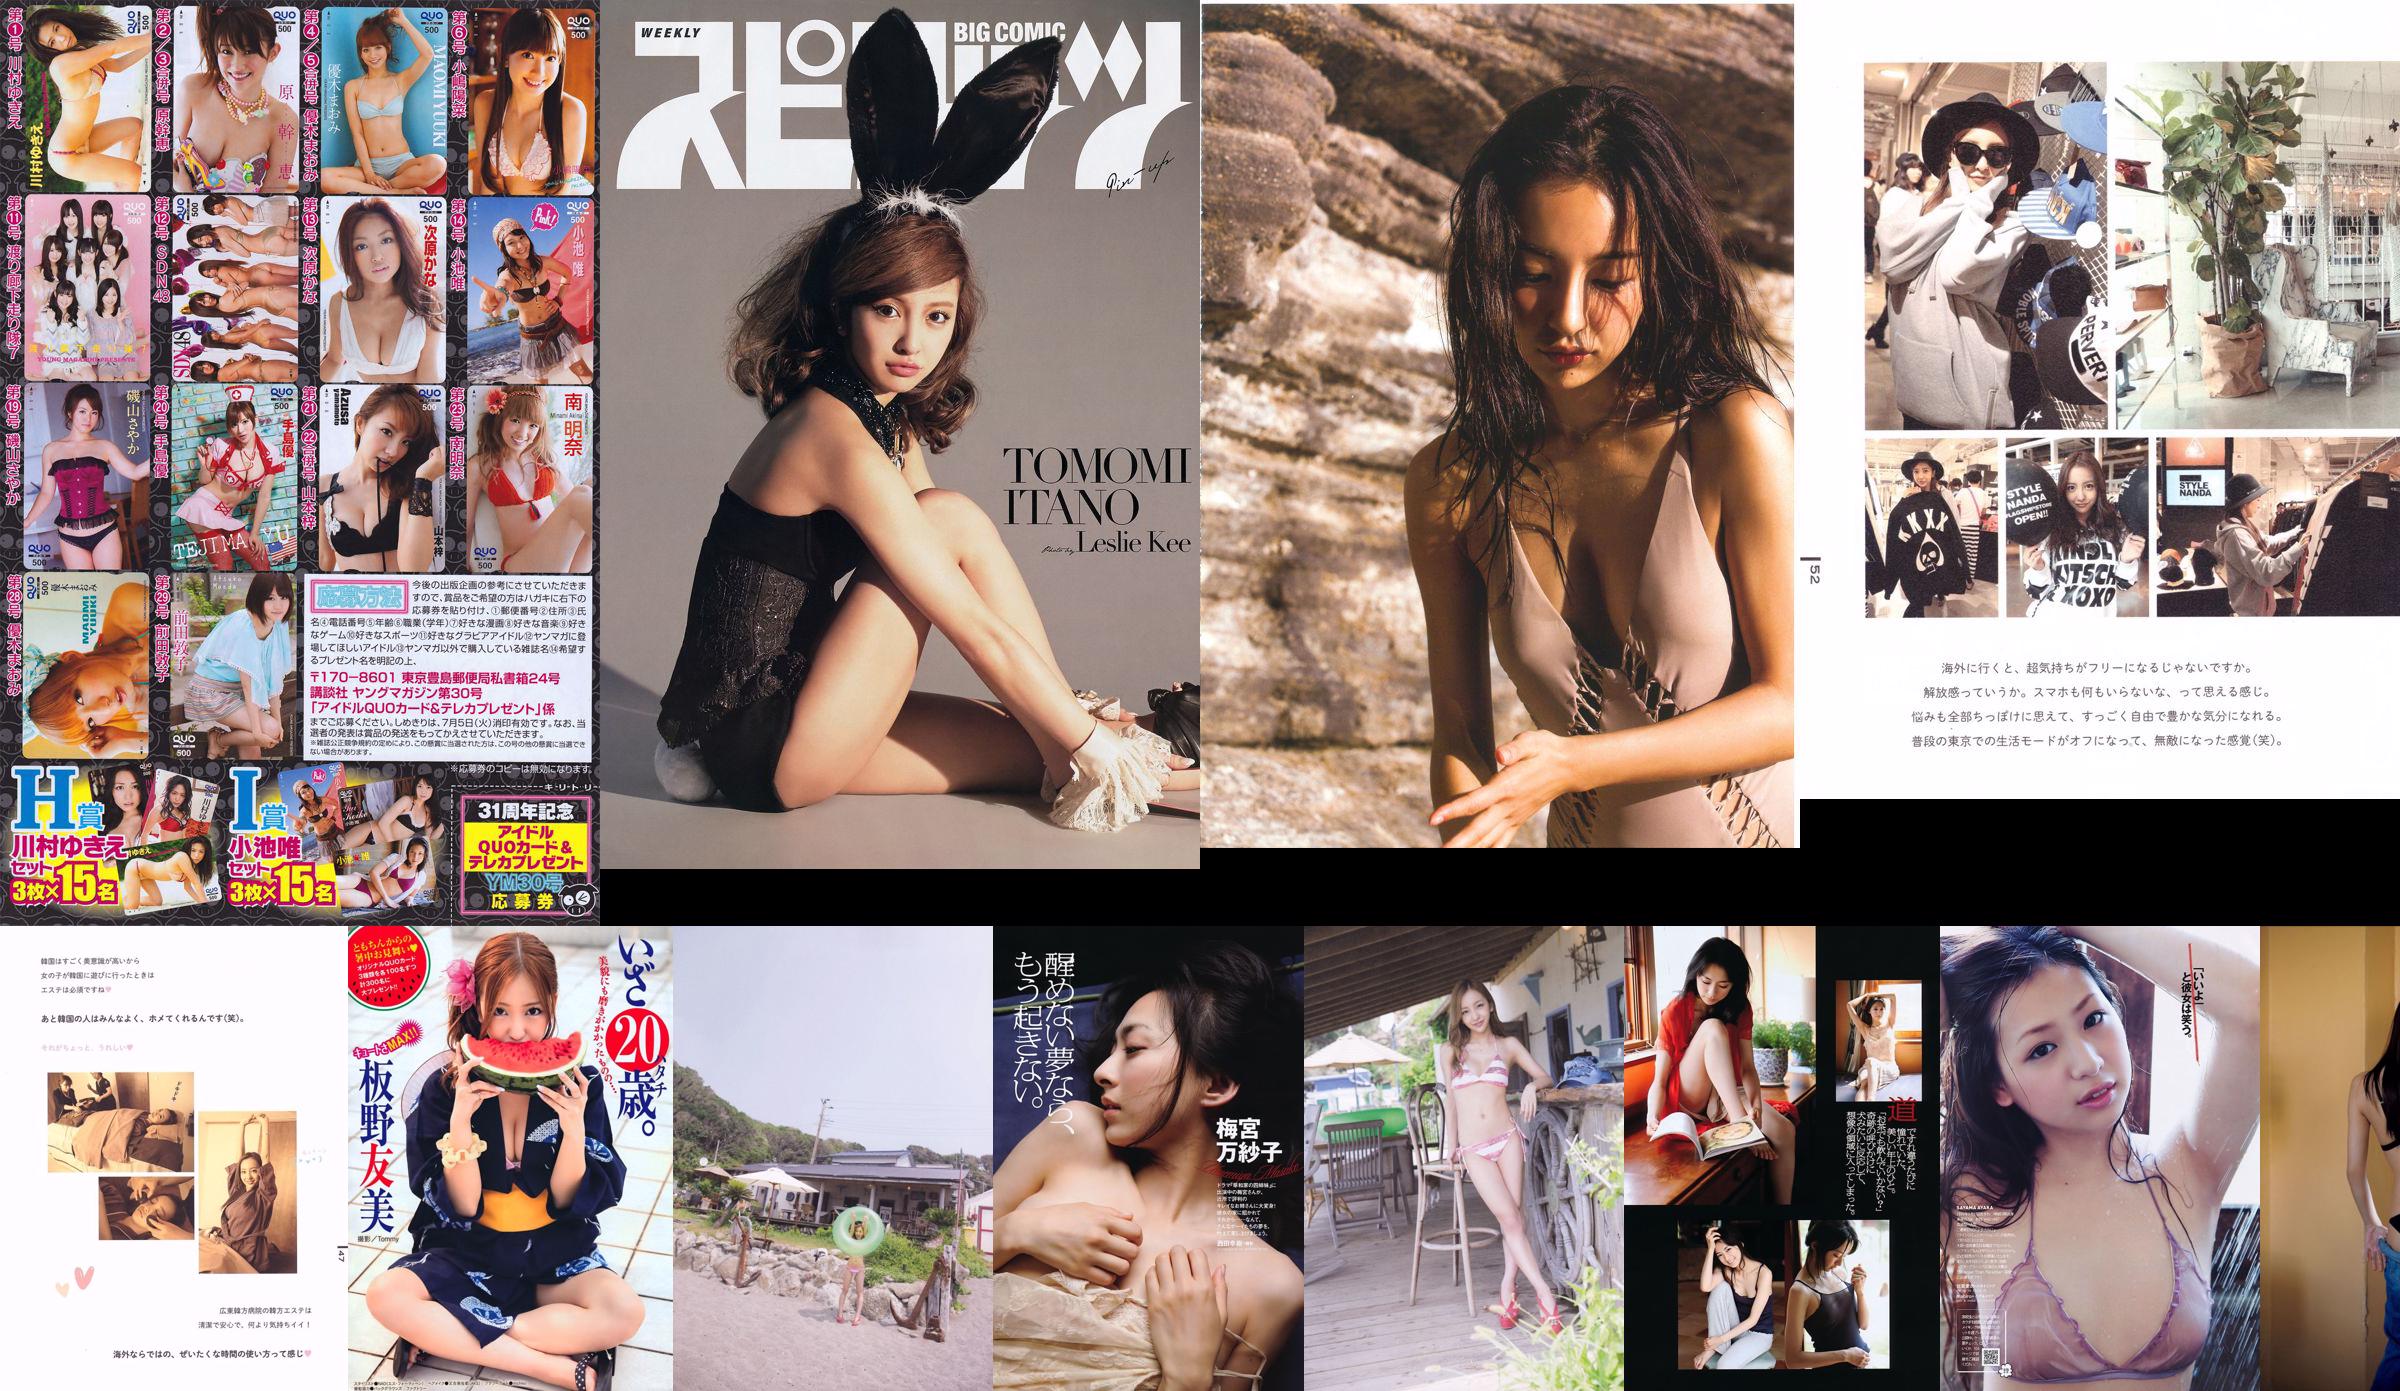 Tomomi Itano << phát hành >> [Sách ảnh] No.a97bd1 Trang 1